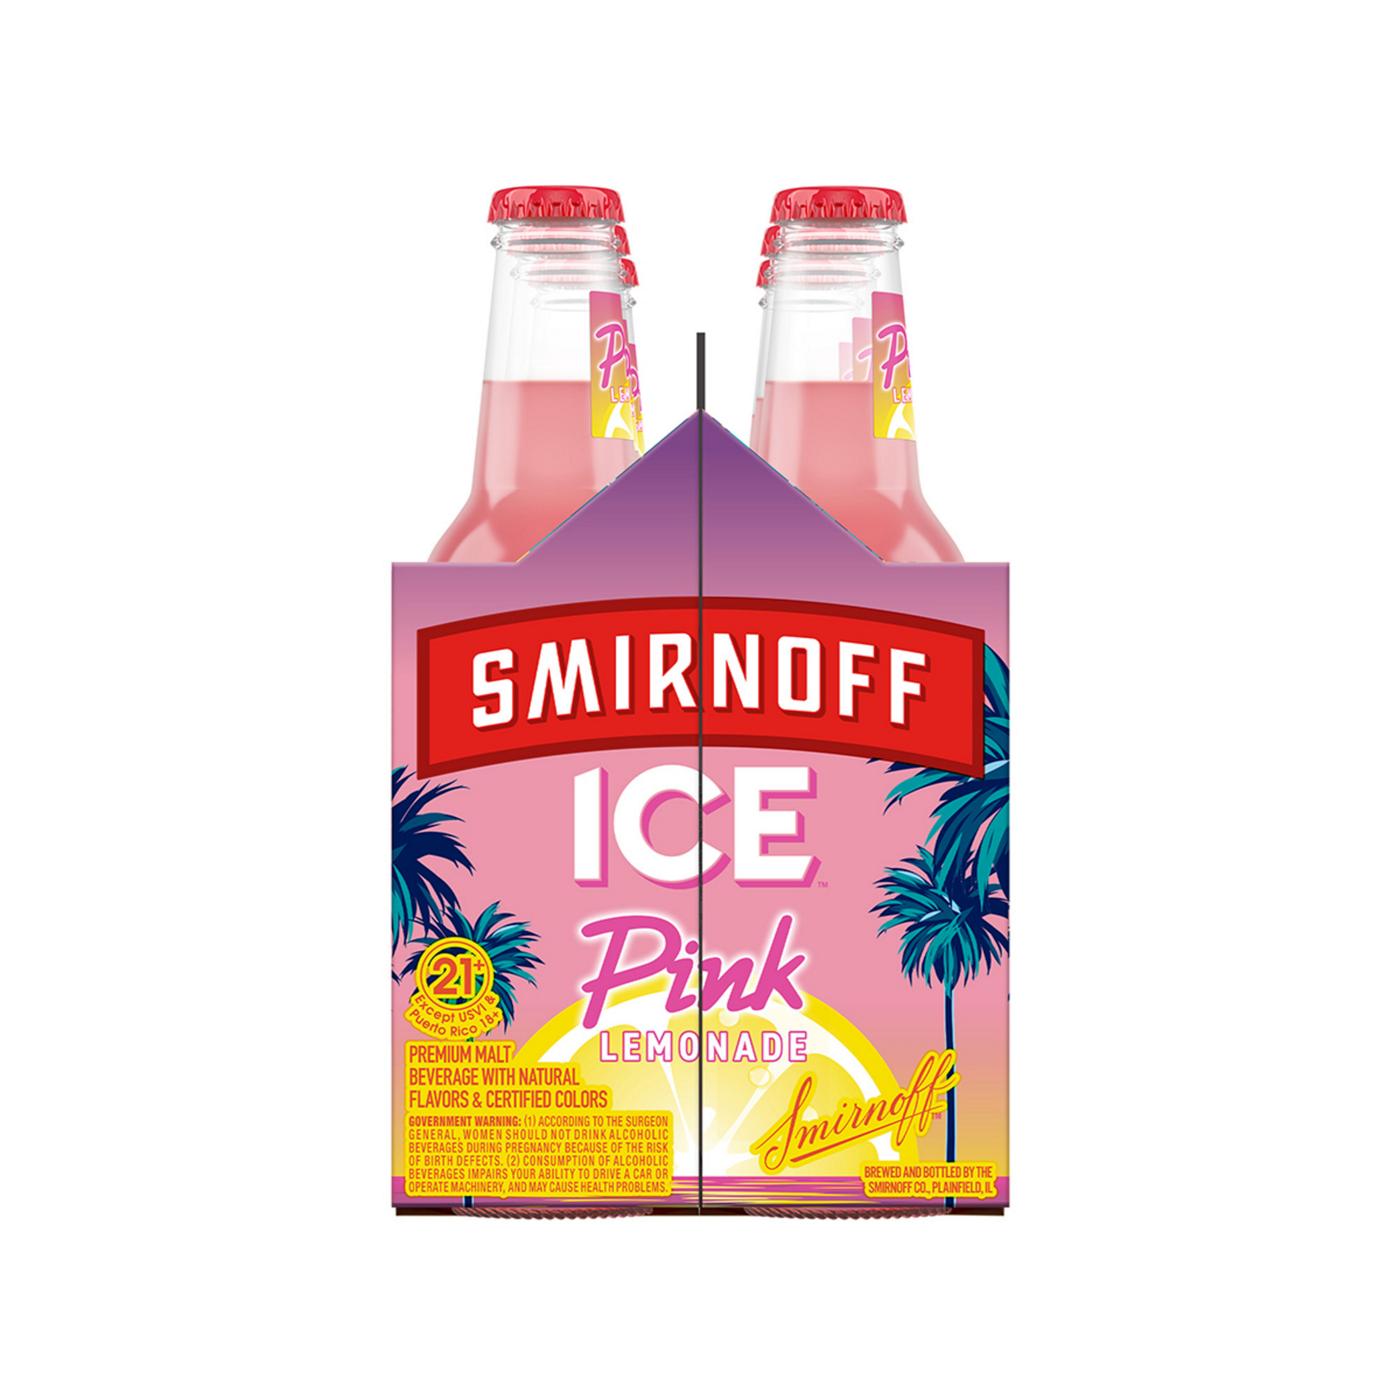 Smirnoff Ice Pink Lemonade; image 3 of 5